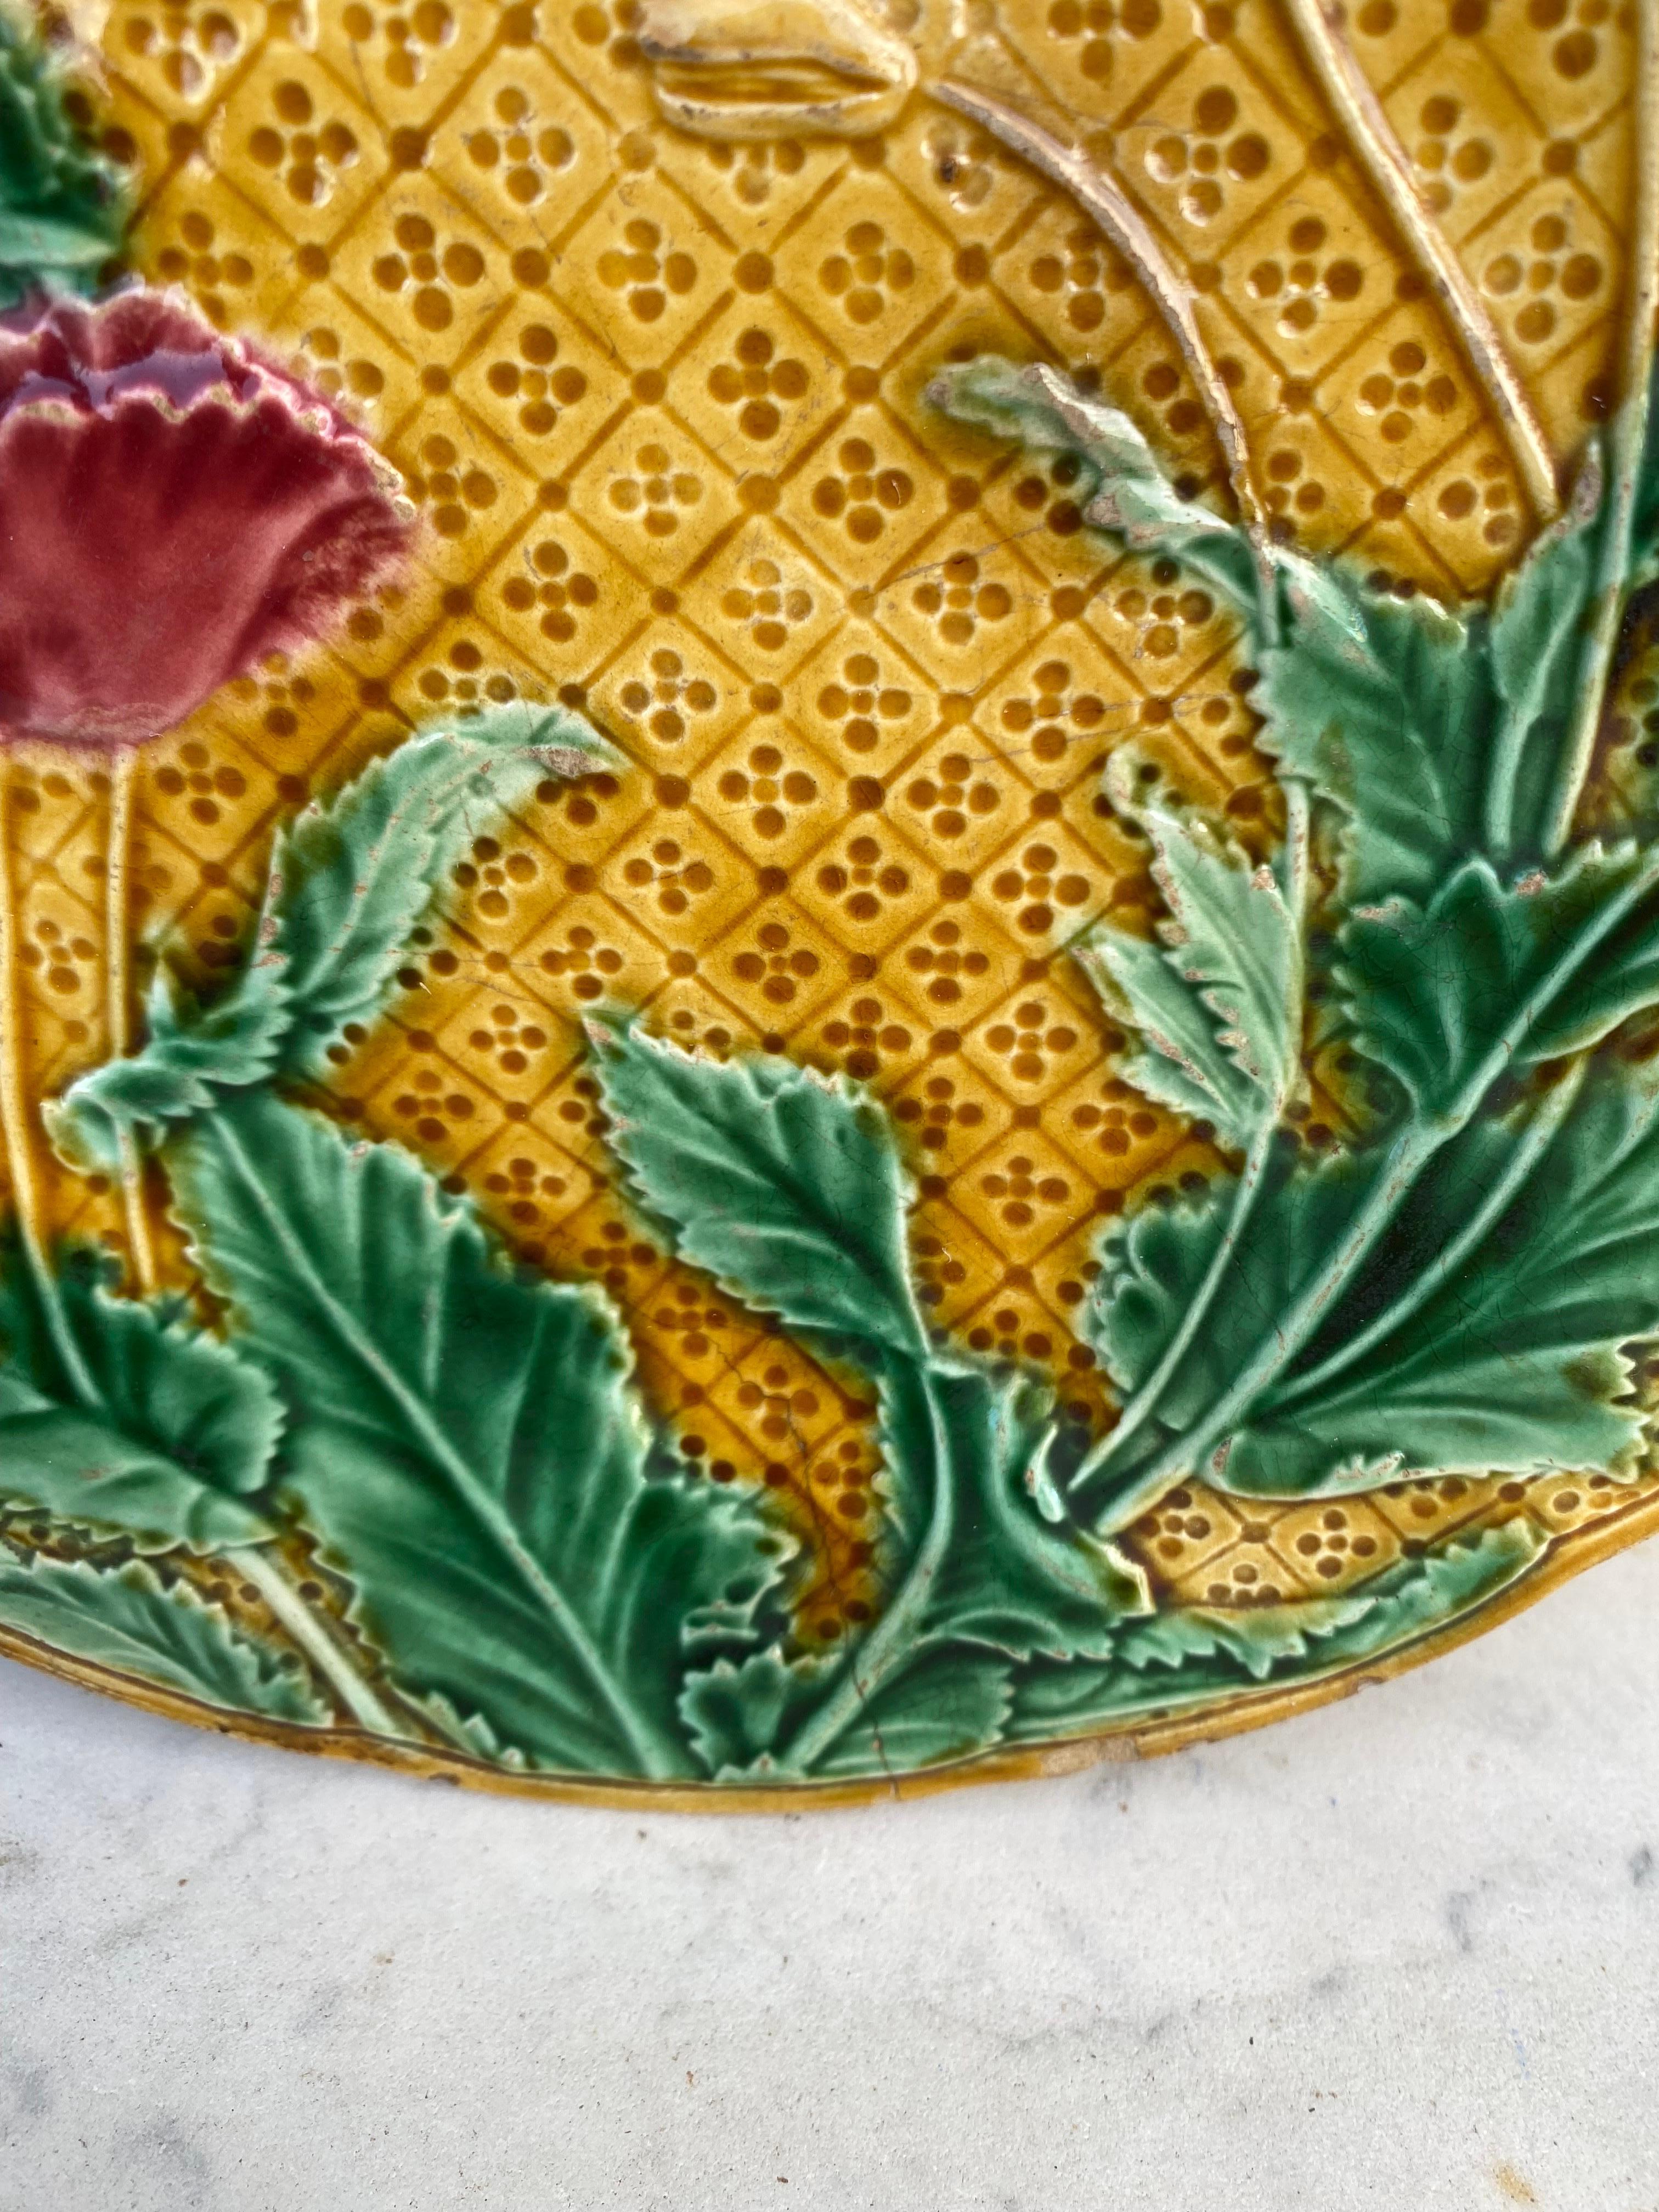 Assiette en majolique française Coquelicots et papillons Gien, vers 1880.
Couleur très rare.
Cette plaque a une ligne de cheveux originale par défaut faite pendant la production.